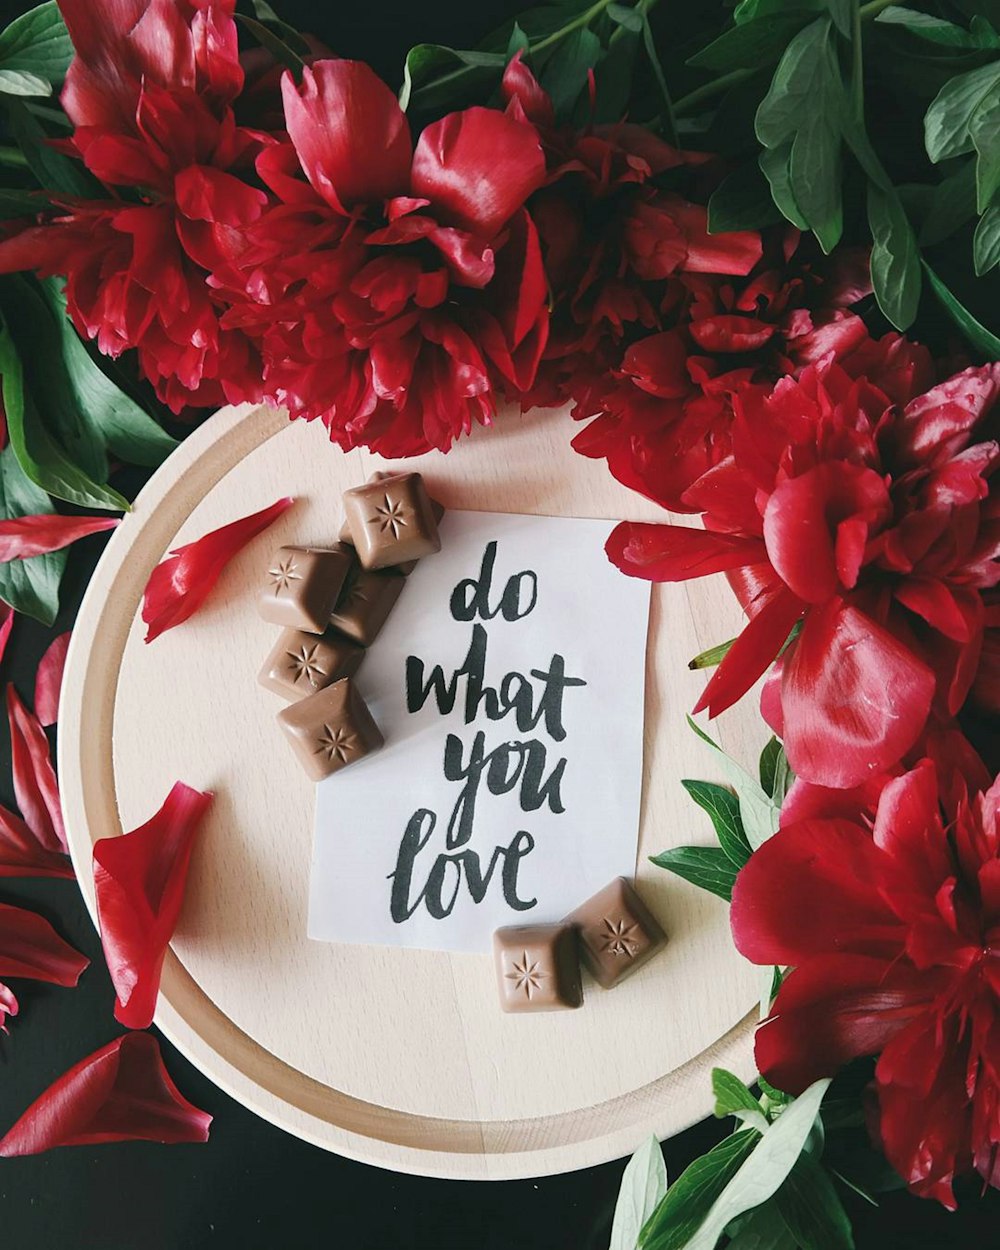 빨간 꽃 옆에있는 접시 위에 "당신이 사랑하는 것을하십시오"라는 종이에 적힌 메모.